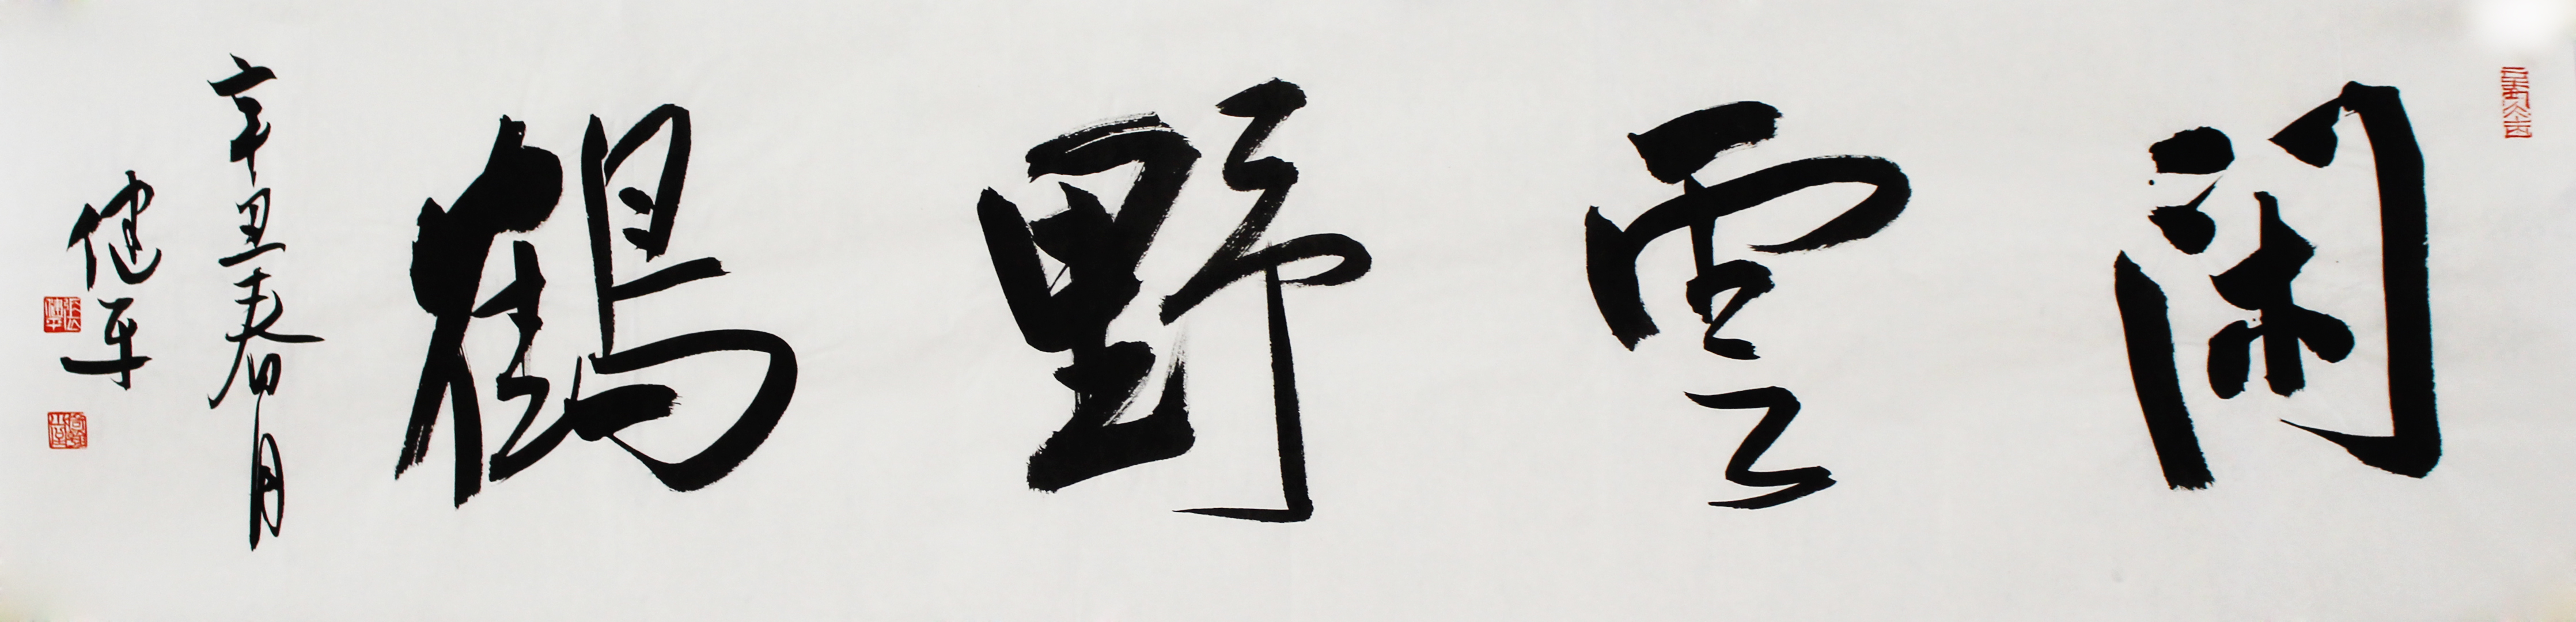 吉林省书法家协会理事张健平书法手绘作品四字吉语